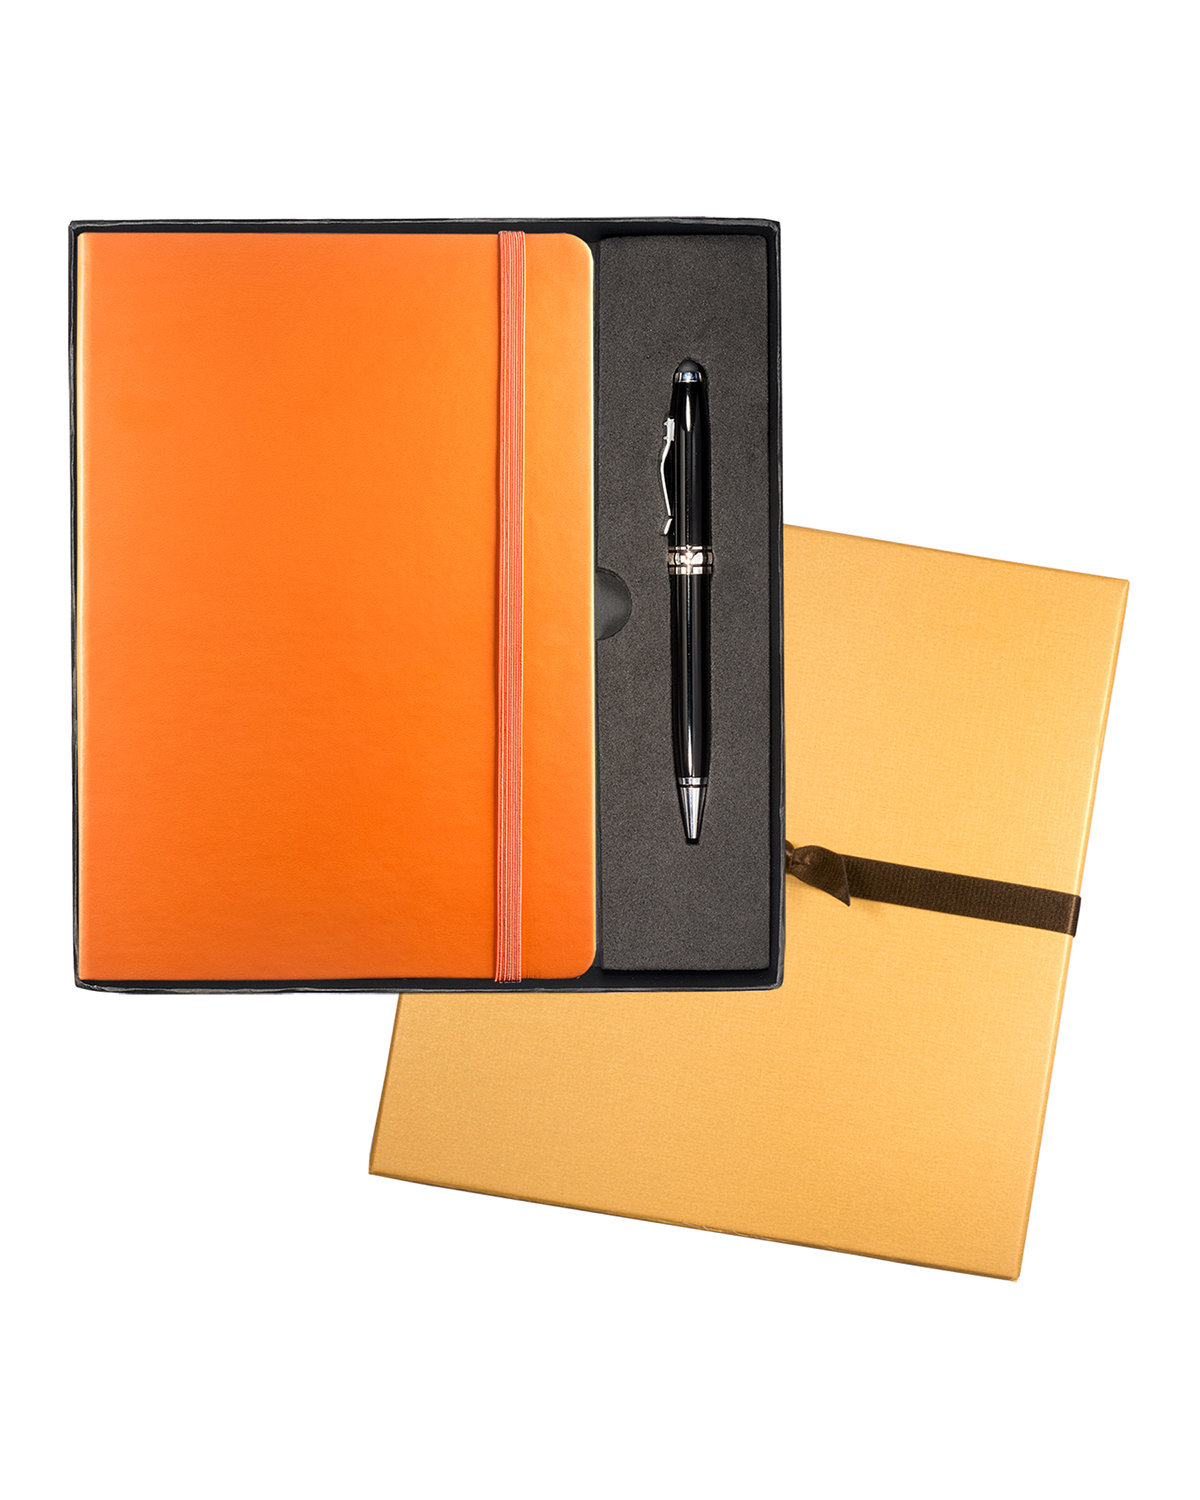 Leeman Tuscany™ Journal And Executive Stylus Pen Set orange 